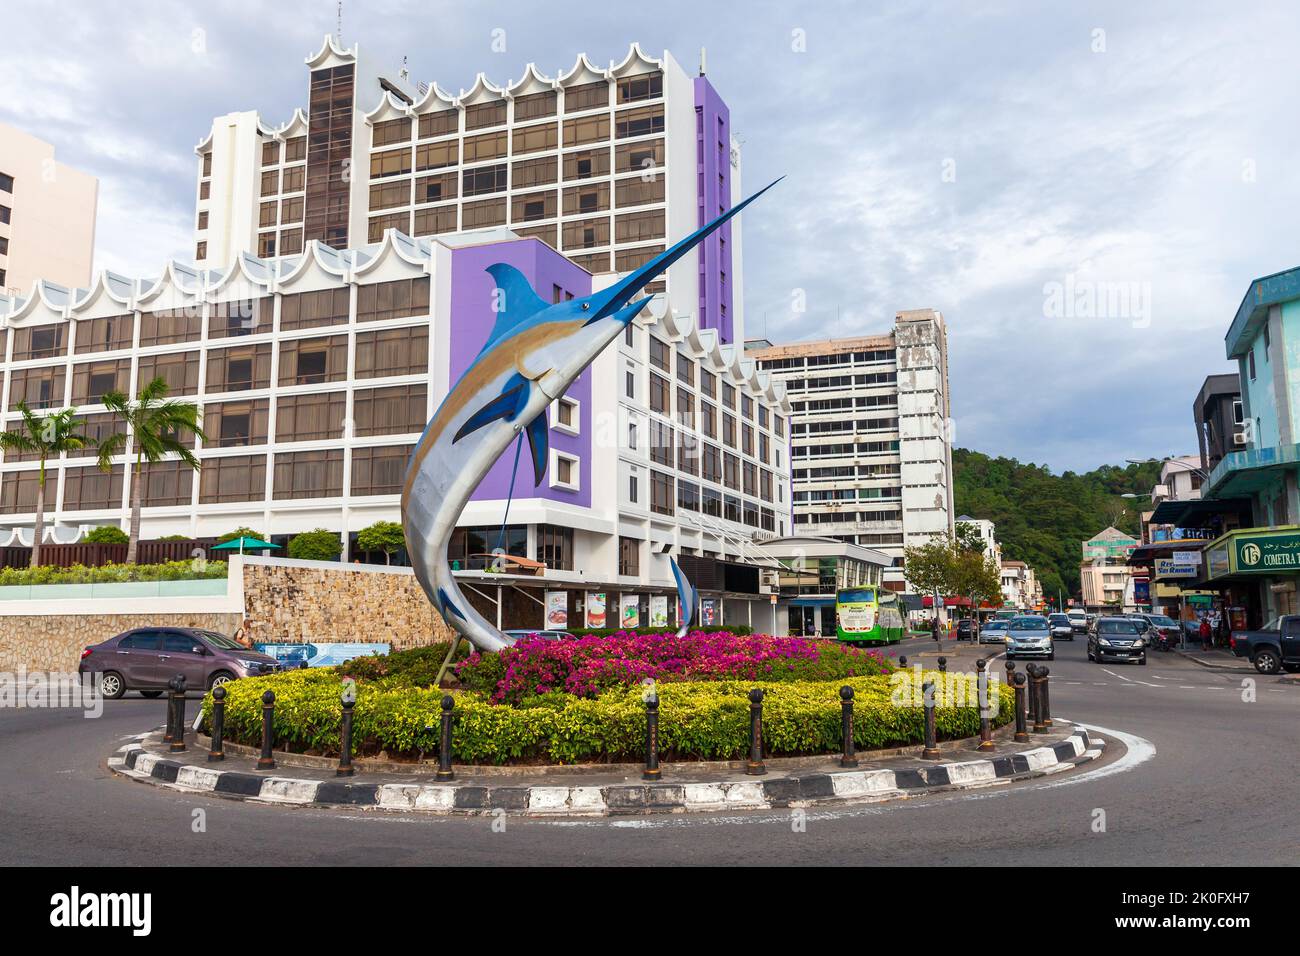 Kota Kinabalu, Malesia - 23 marzo 2019: Statua di Marlin montata sulla rotonda nel quartiere centrale della città di Kota Kinabalu Foto Stock